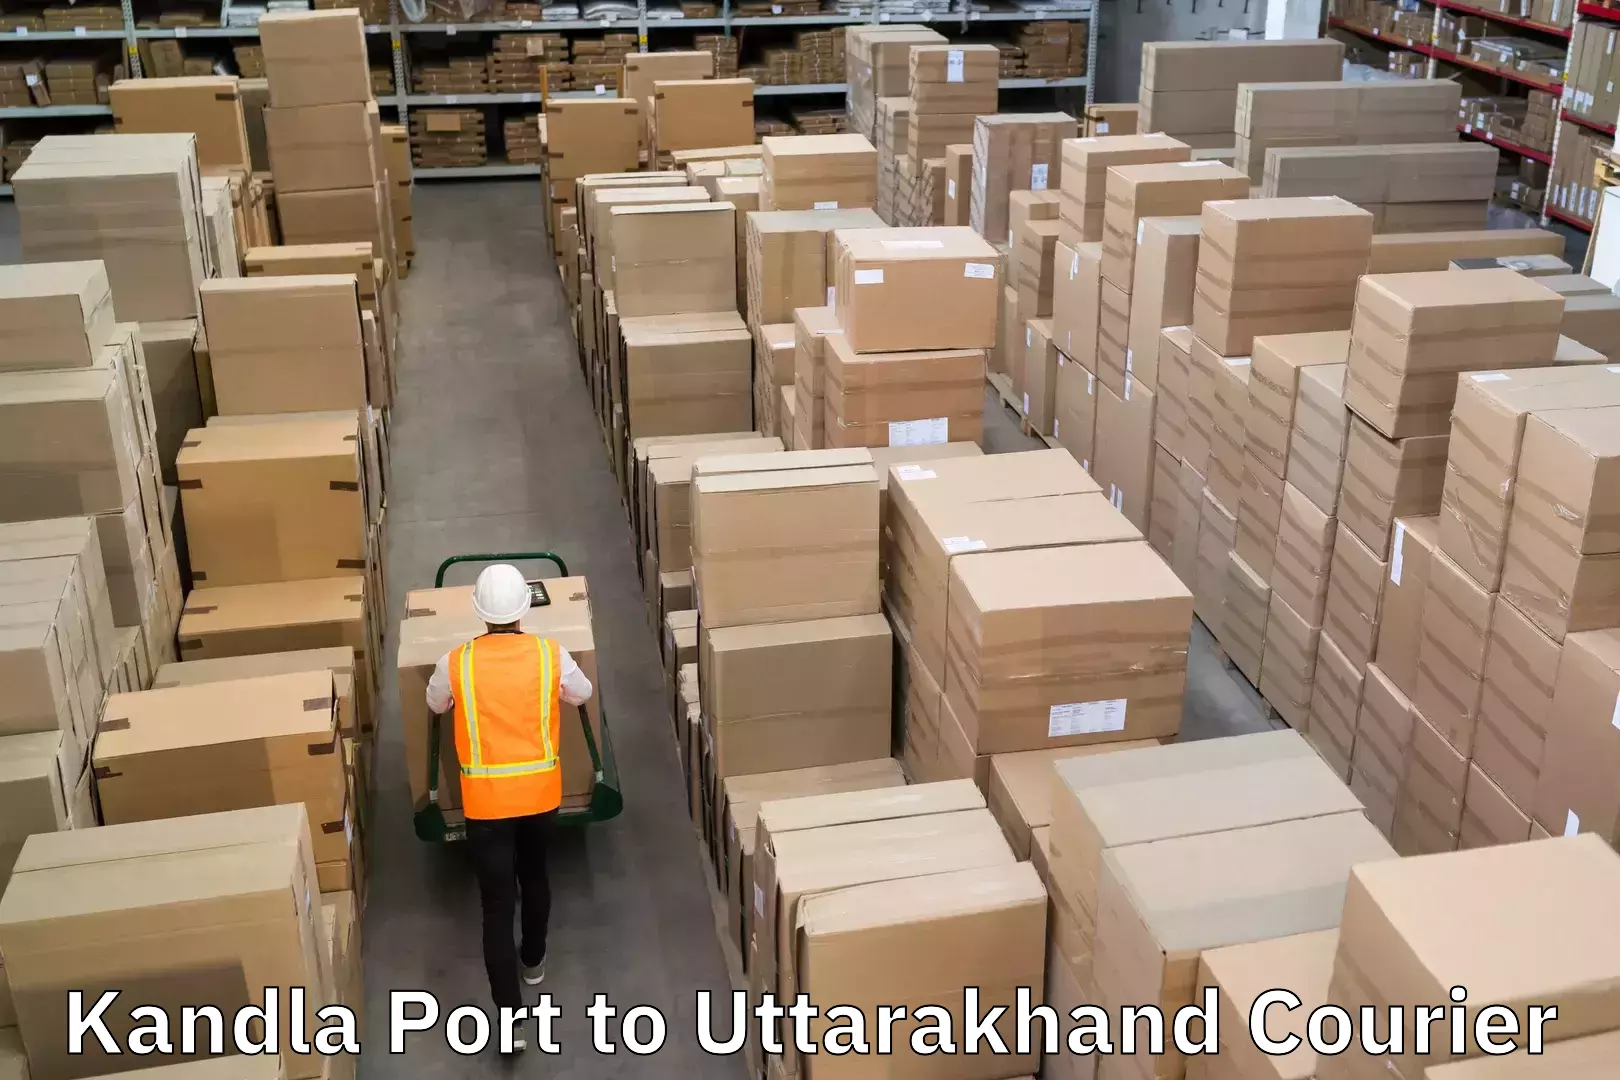 Doorstep delivery service Kandla Port to Uttarakhand